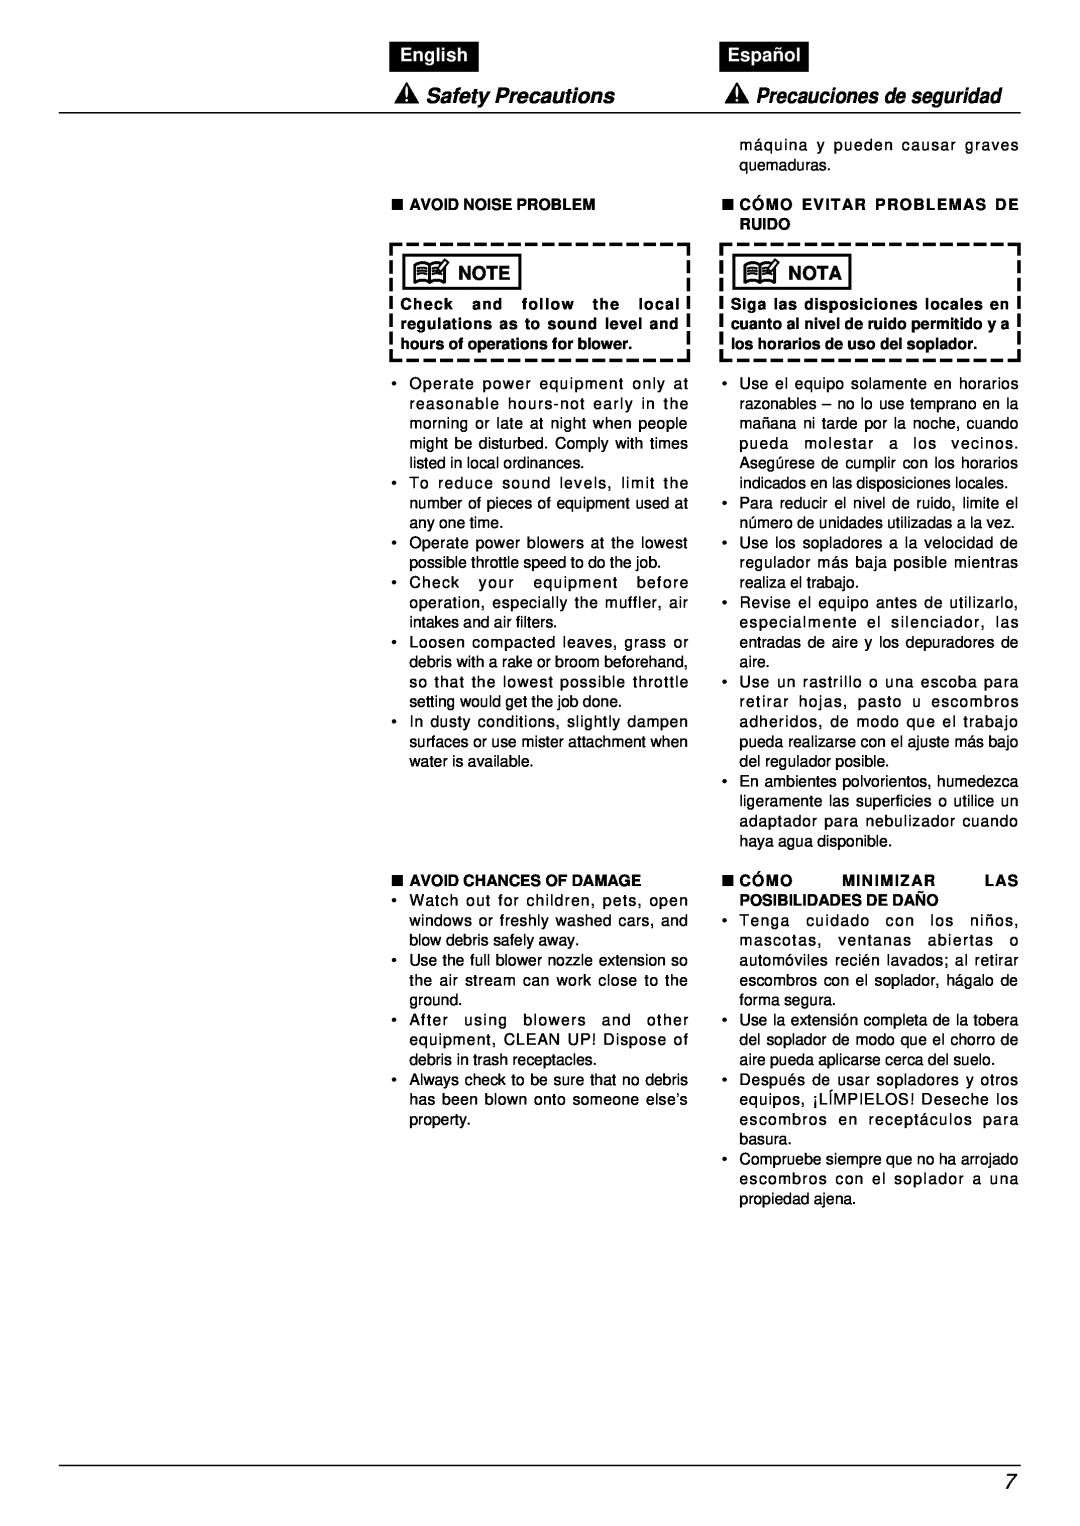 RedMax EB7001RH manual Safety Precautions, Precauciones de seguridad, English, Español, Nota 